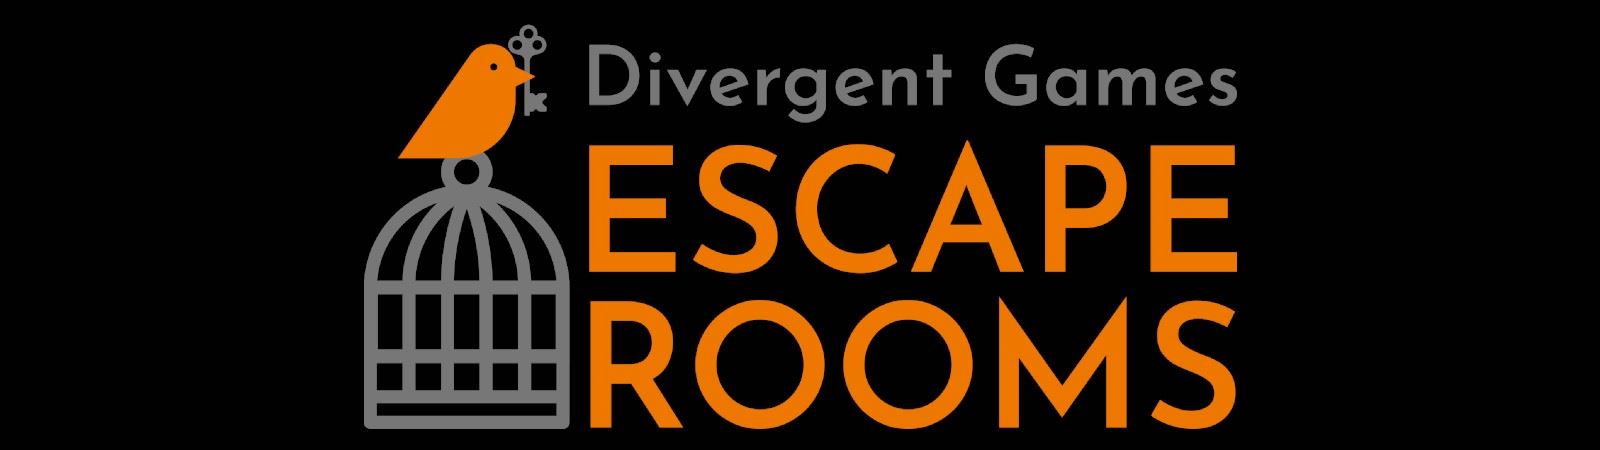 Divergent Escape rooms Falkirk